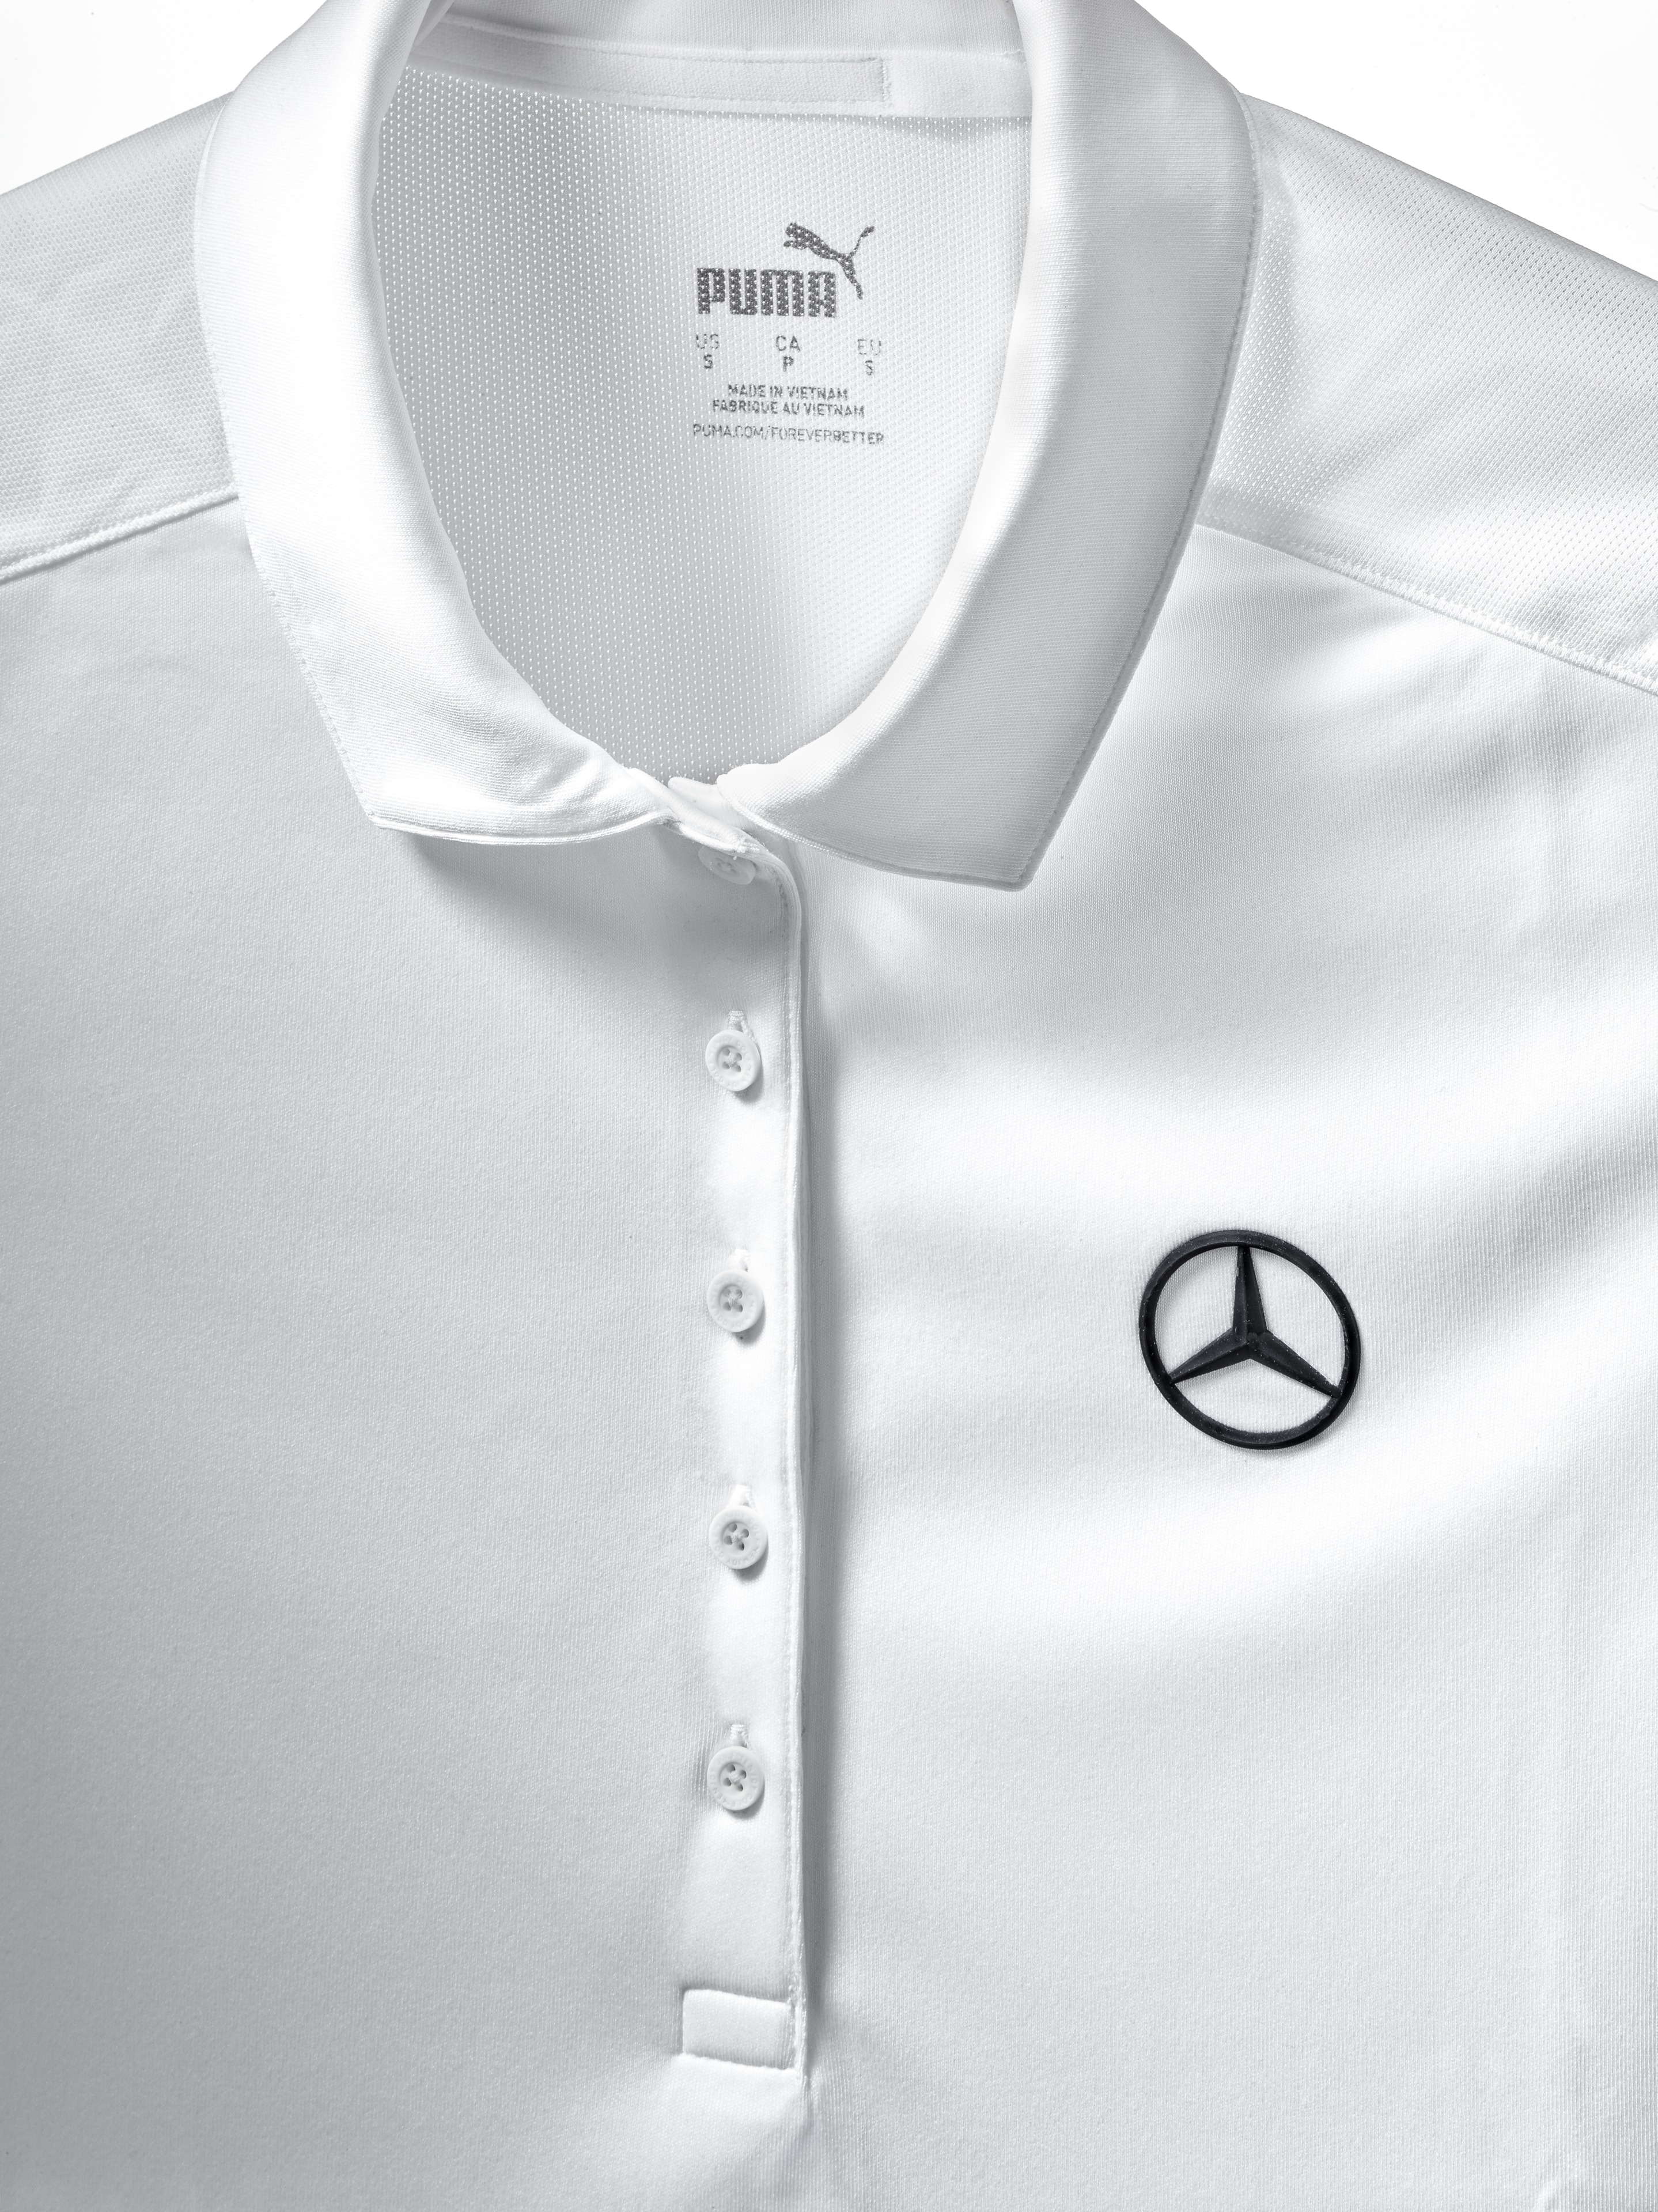 Golf-Poloshirt Damen, Pure - white, L